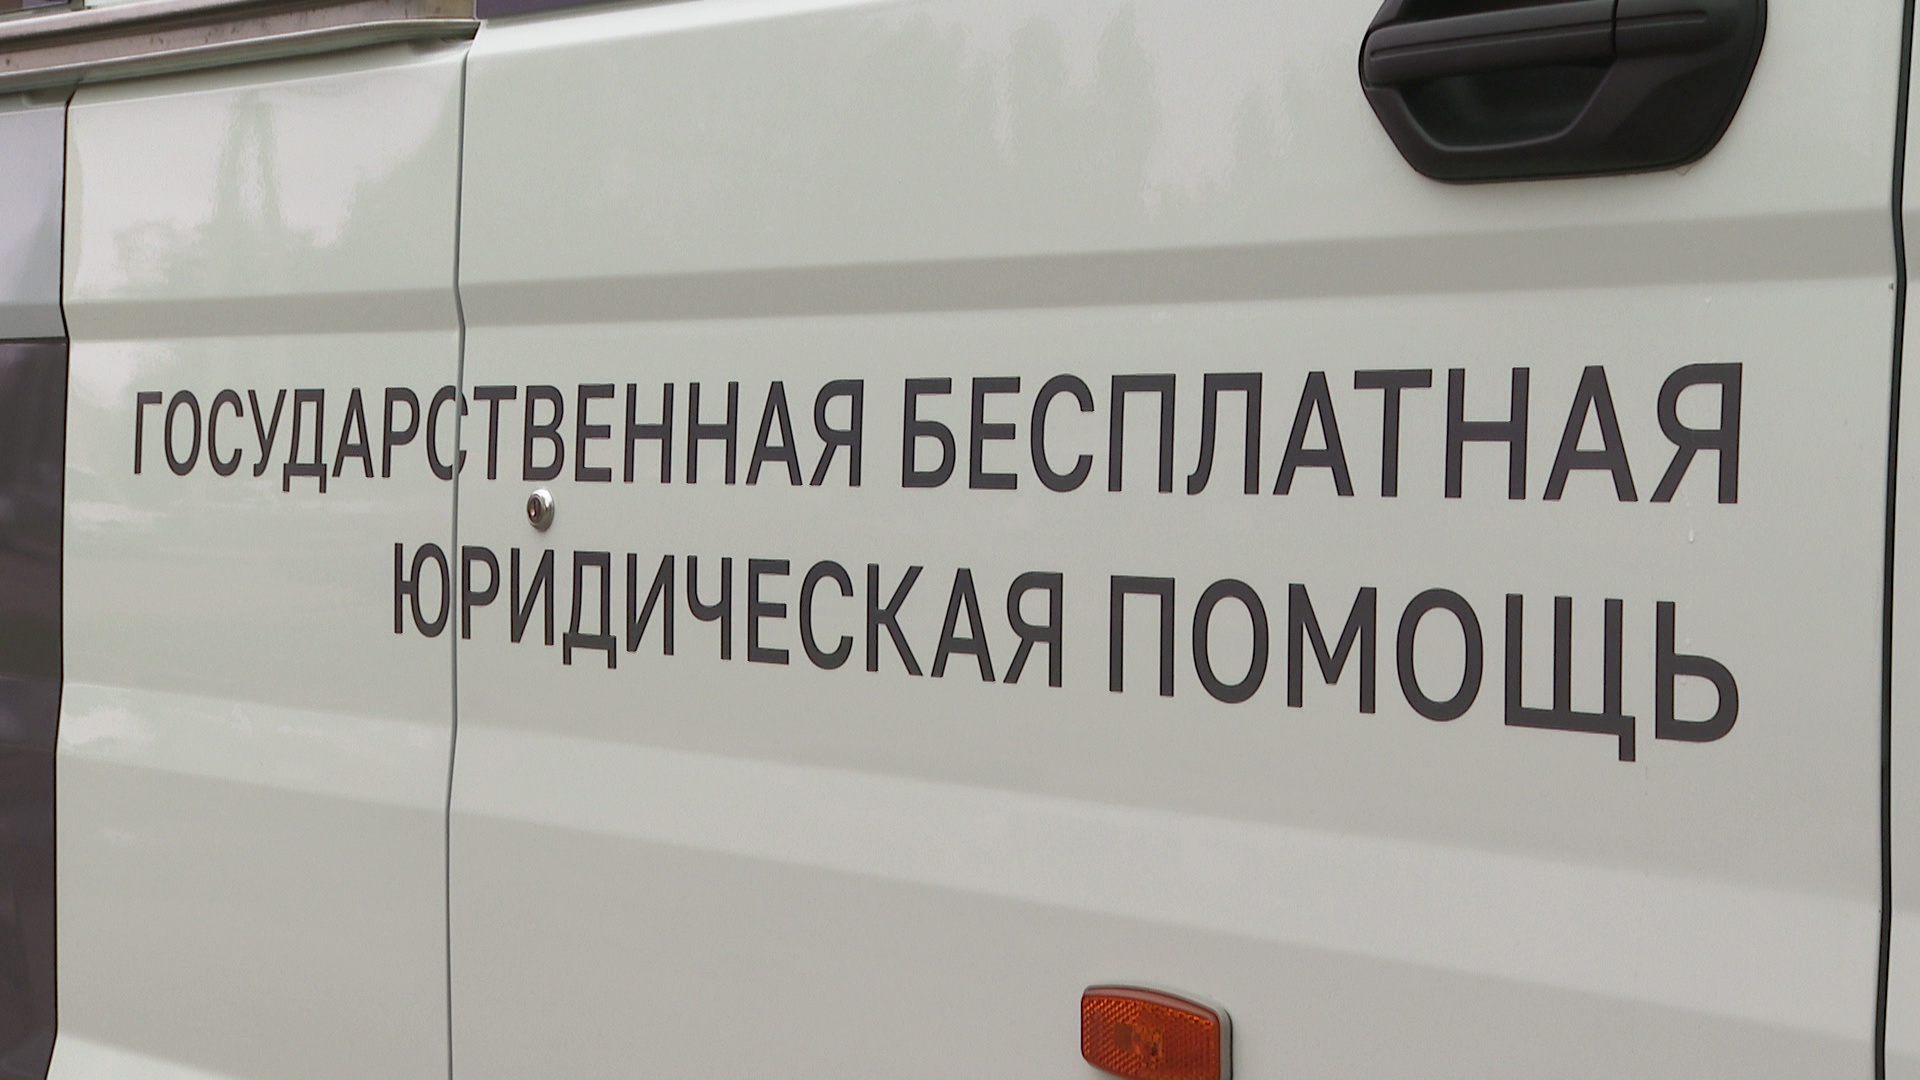 Жители Белгородского района смогут бесплатно получить юридическую помощь